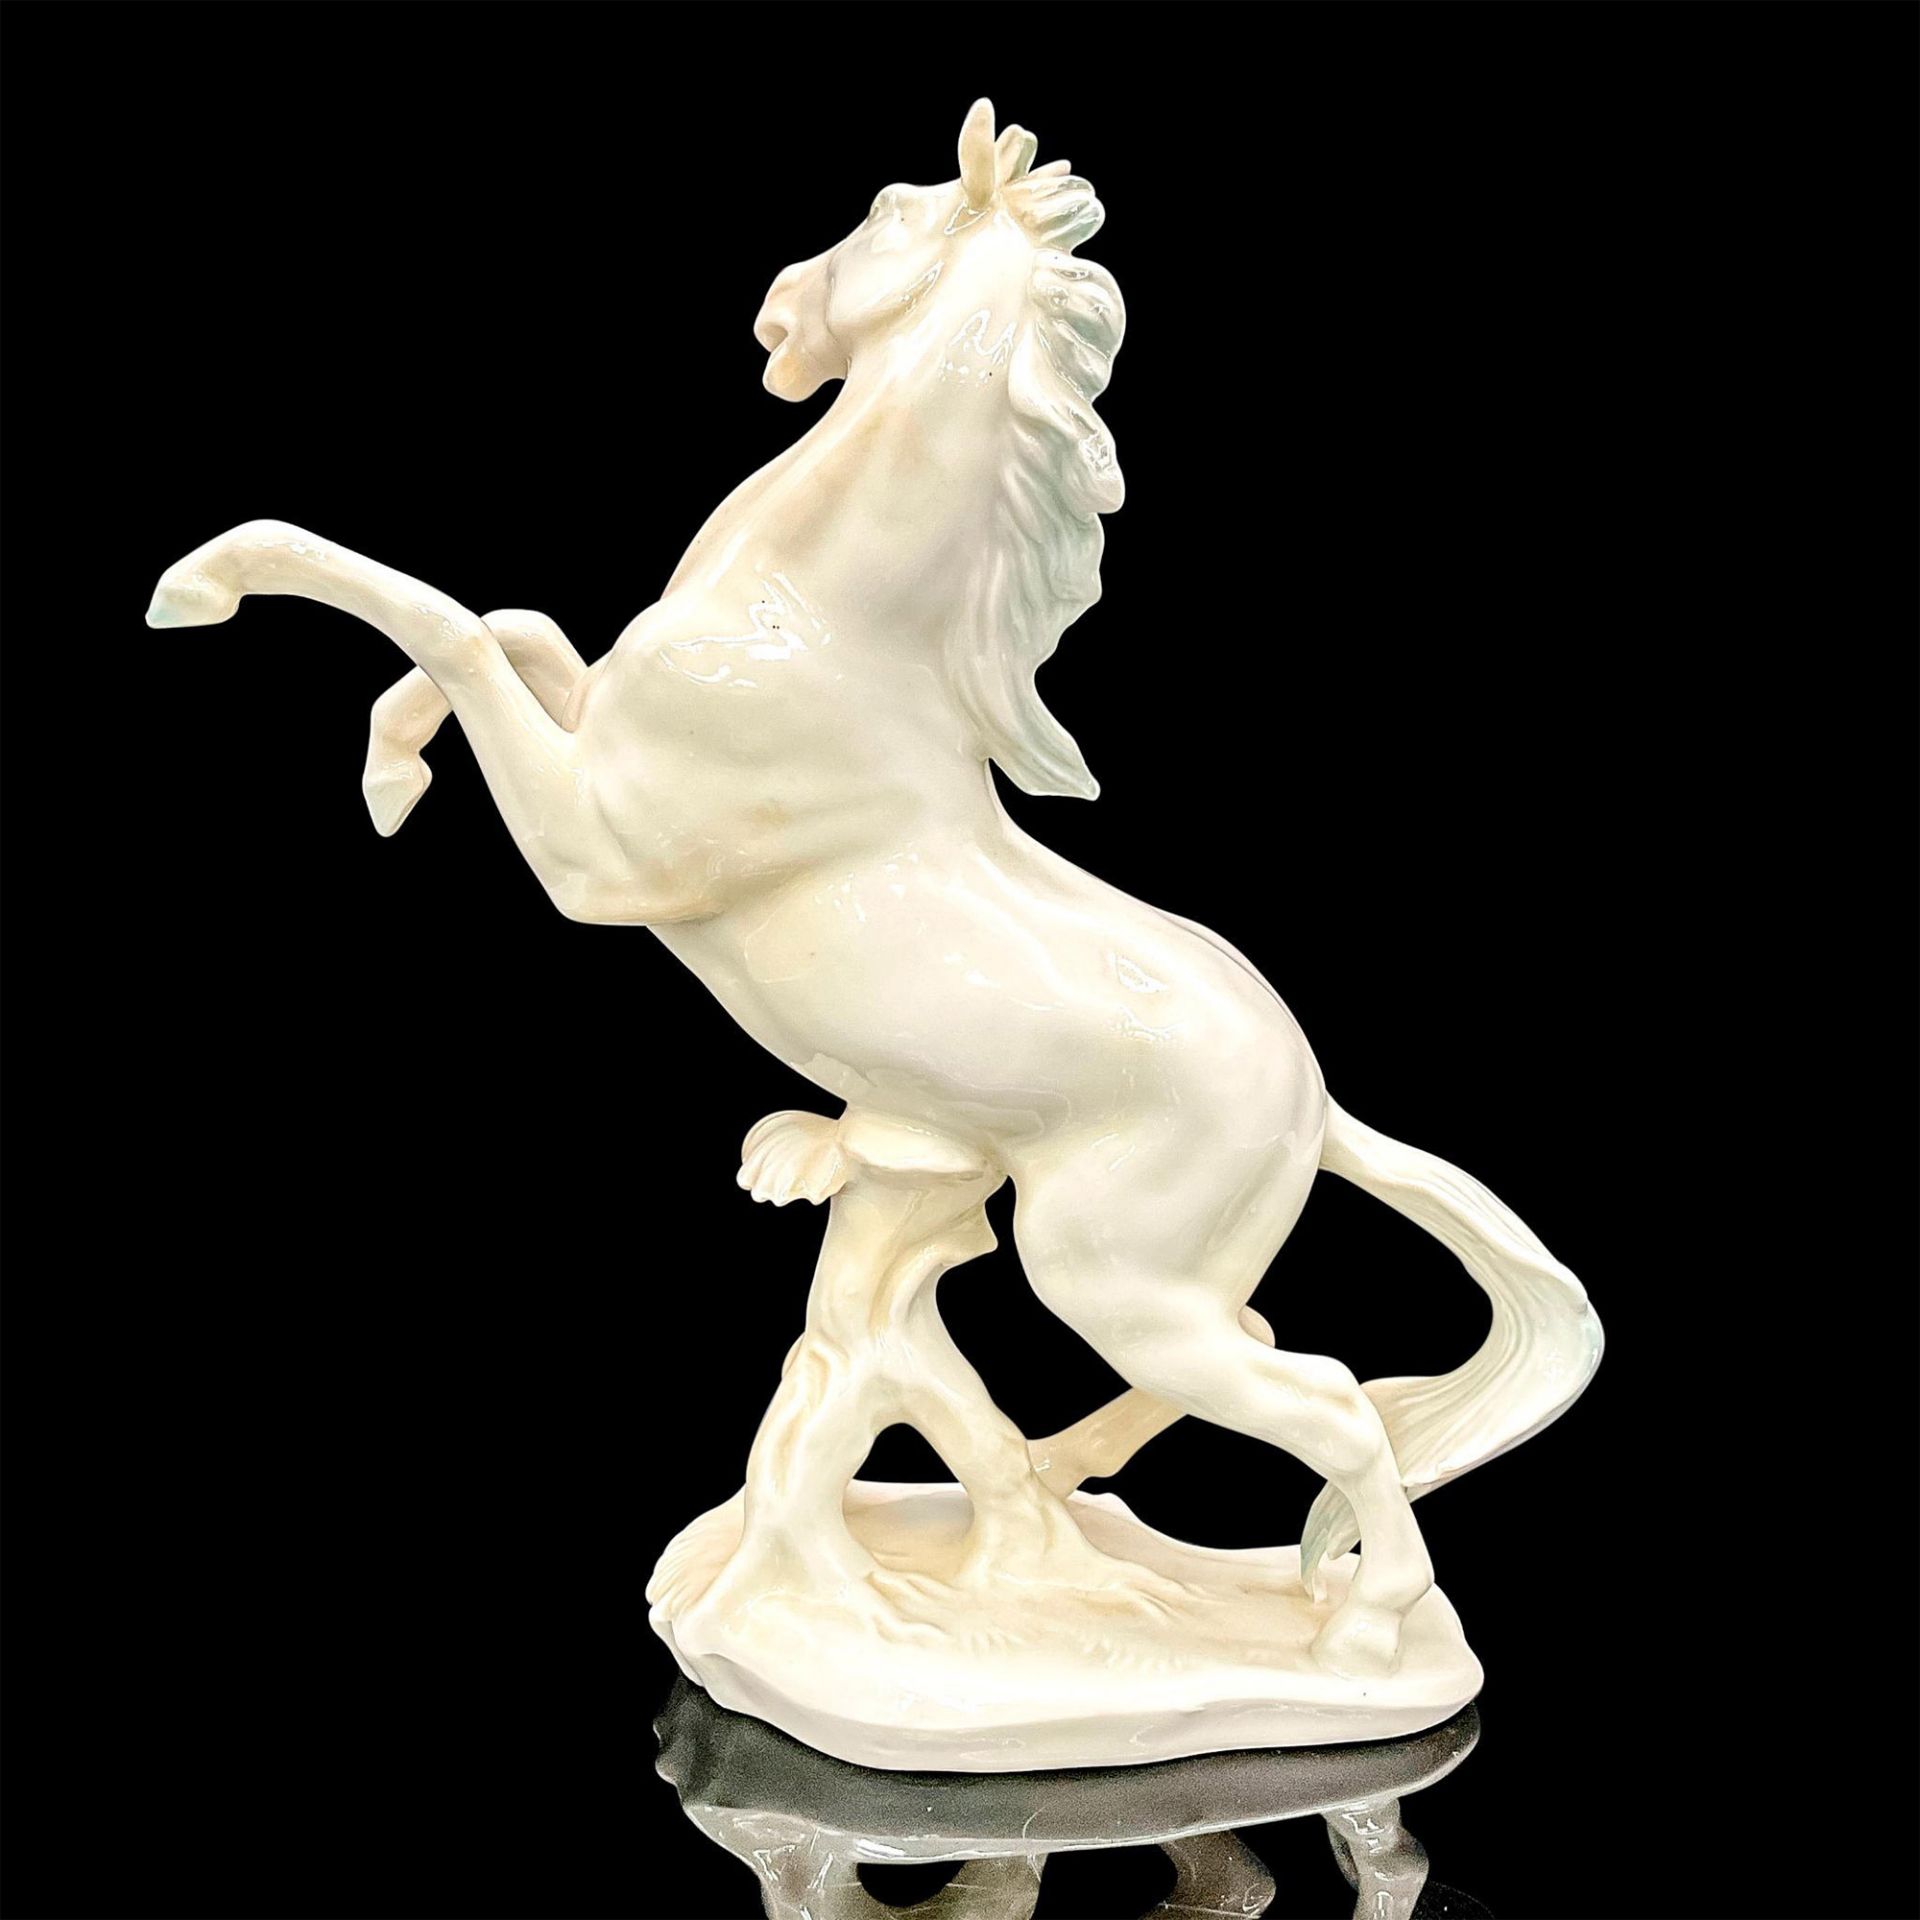 Karl ENS Porcelain Stallion Figurine - Image 2 of 3